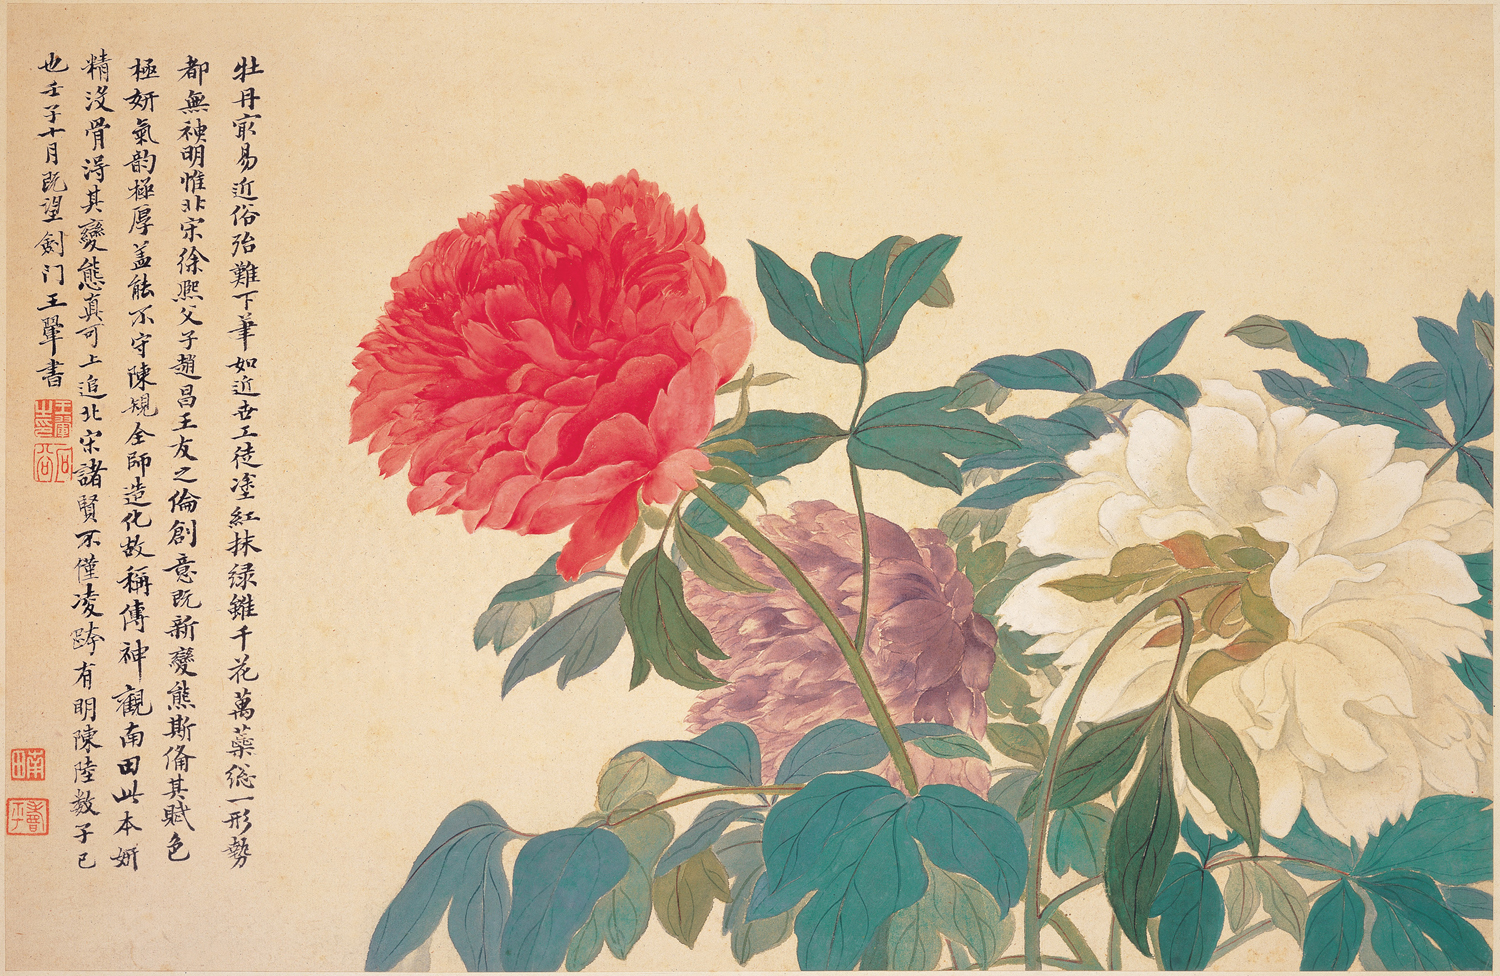 牡丹 by Yun Shou-p'ing - 1672 - 28.5 x 43.0 厘米 